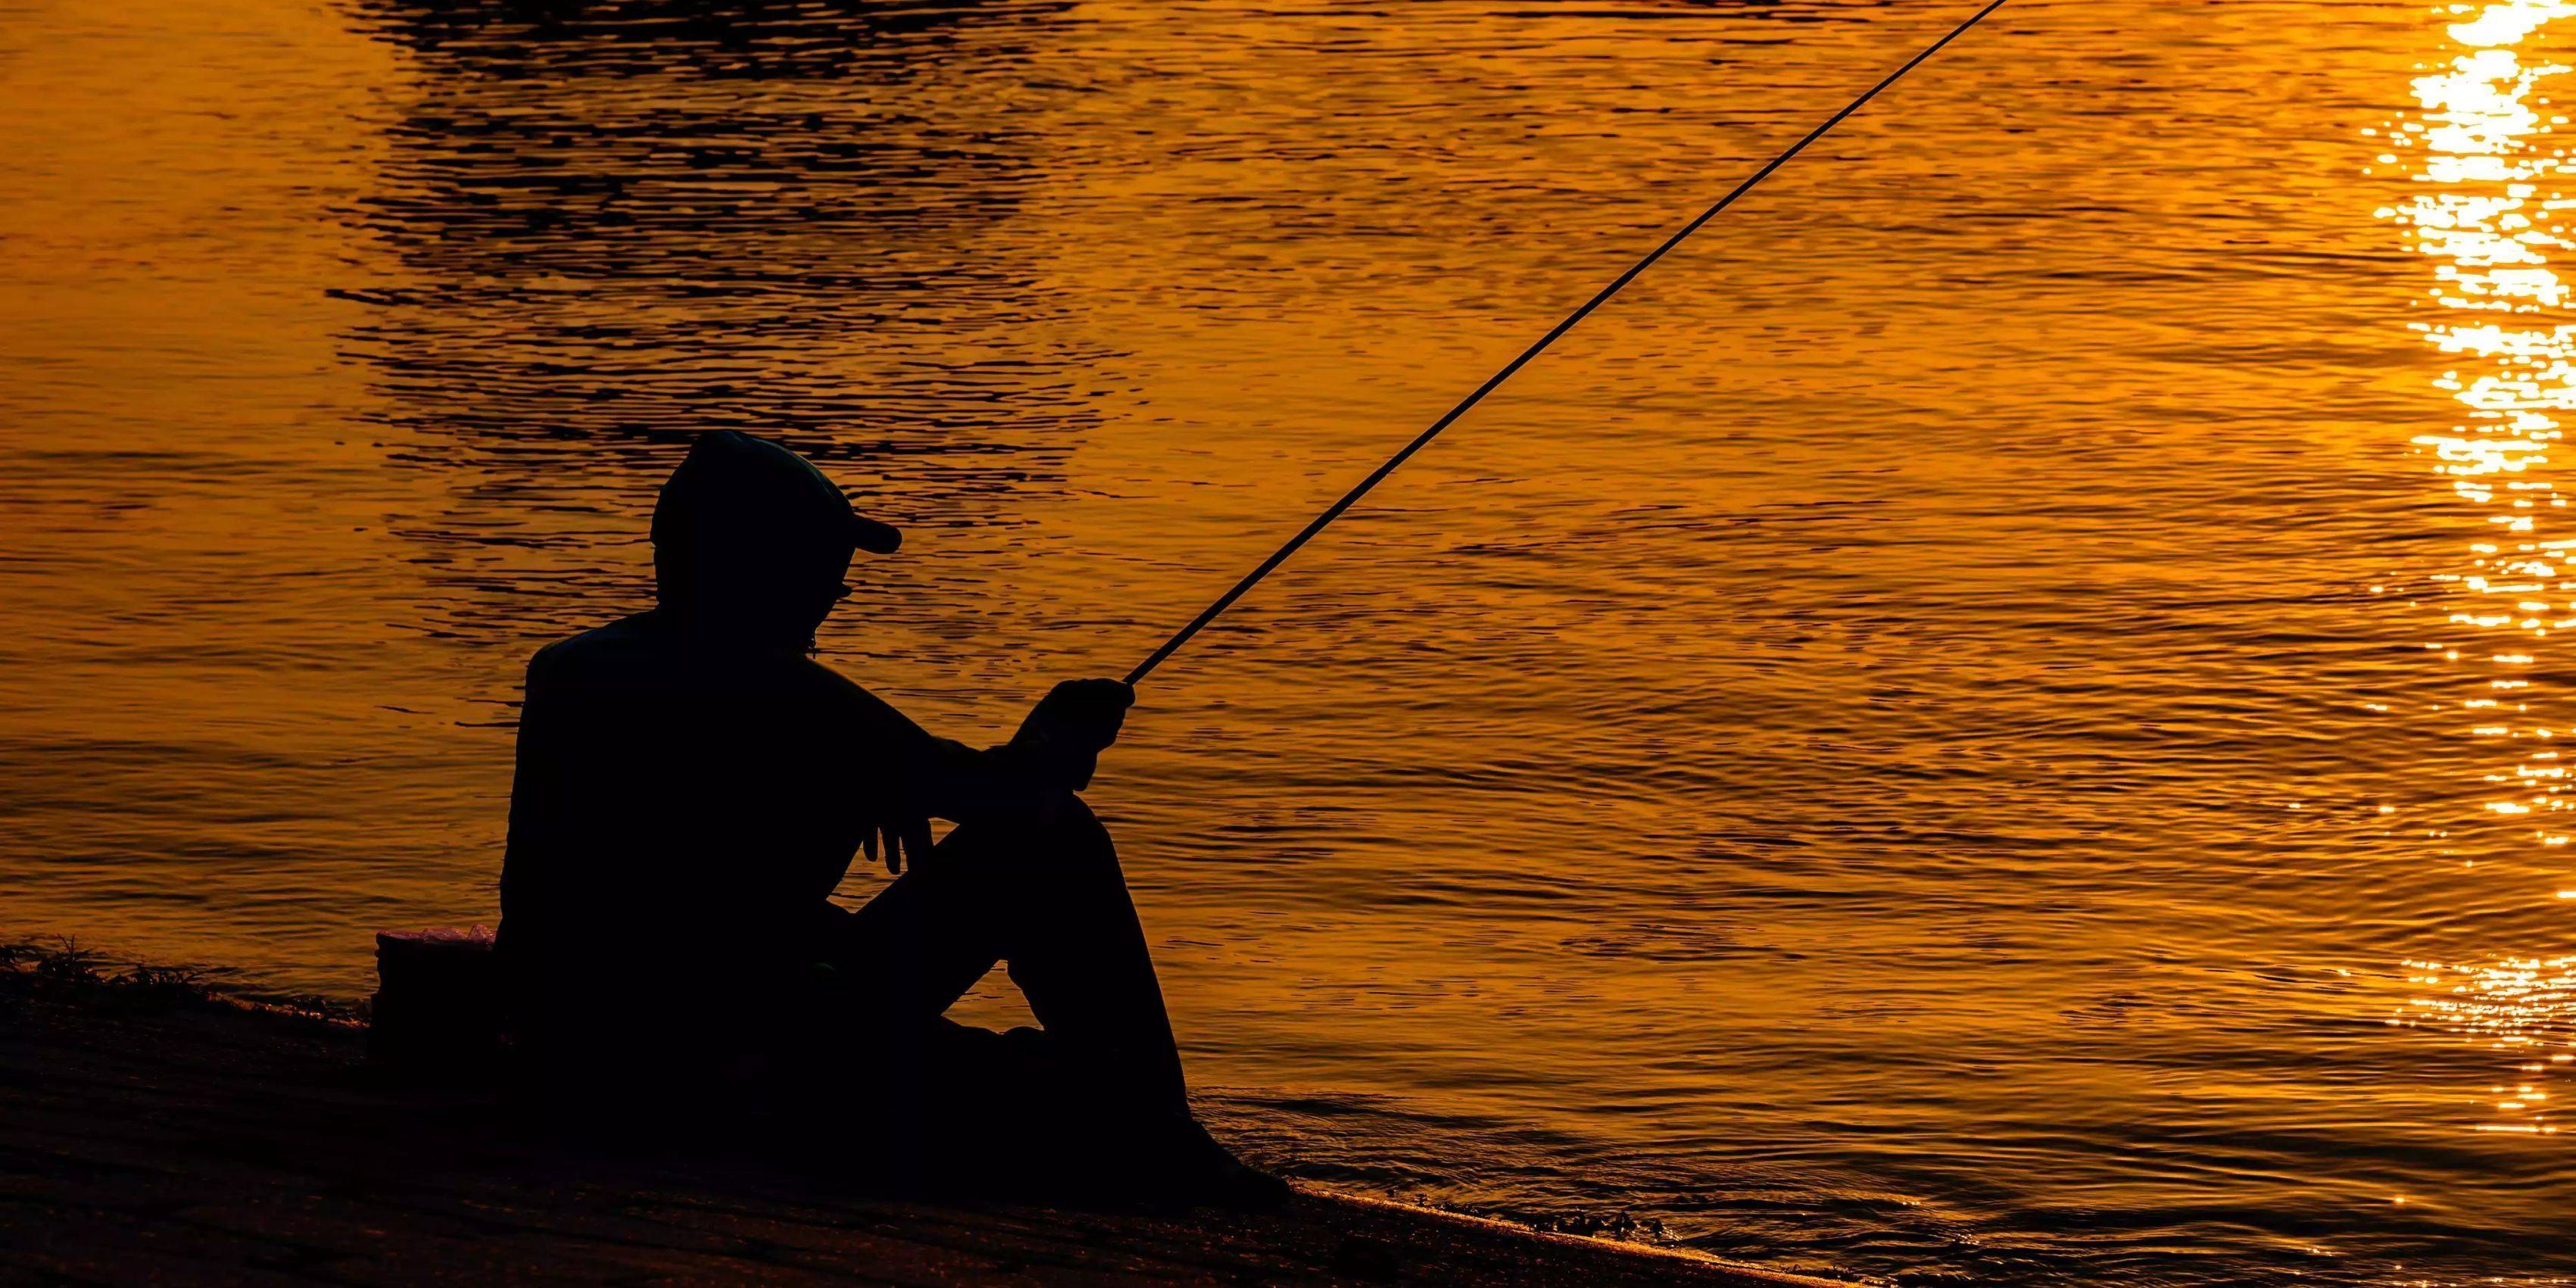 从钓鱼娱乐,浅谈国内钓鱼文化发展